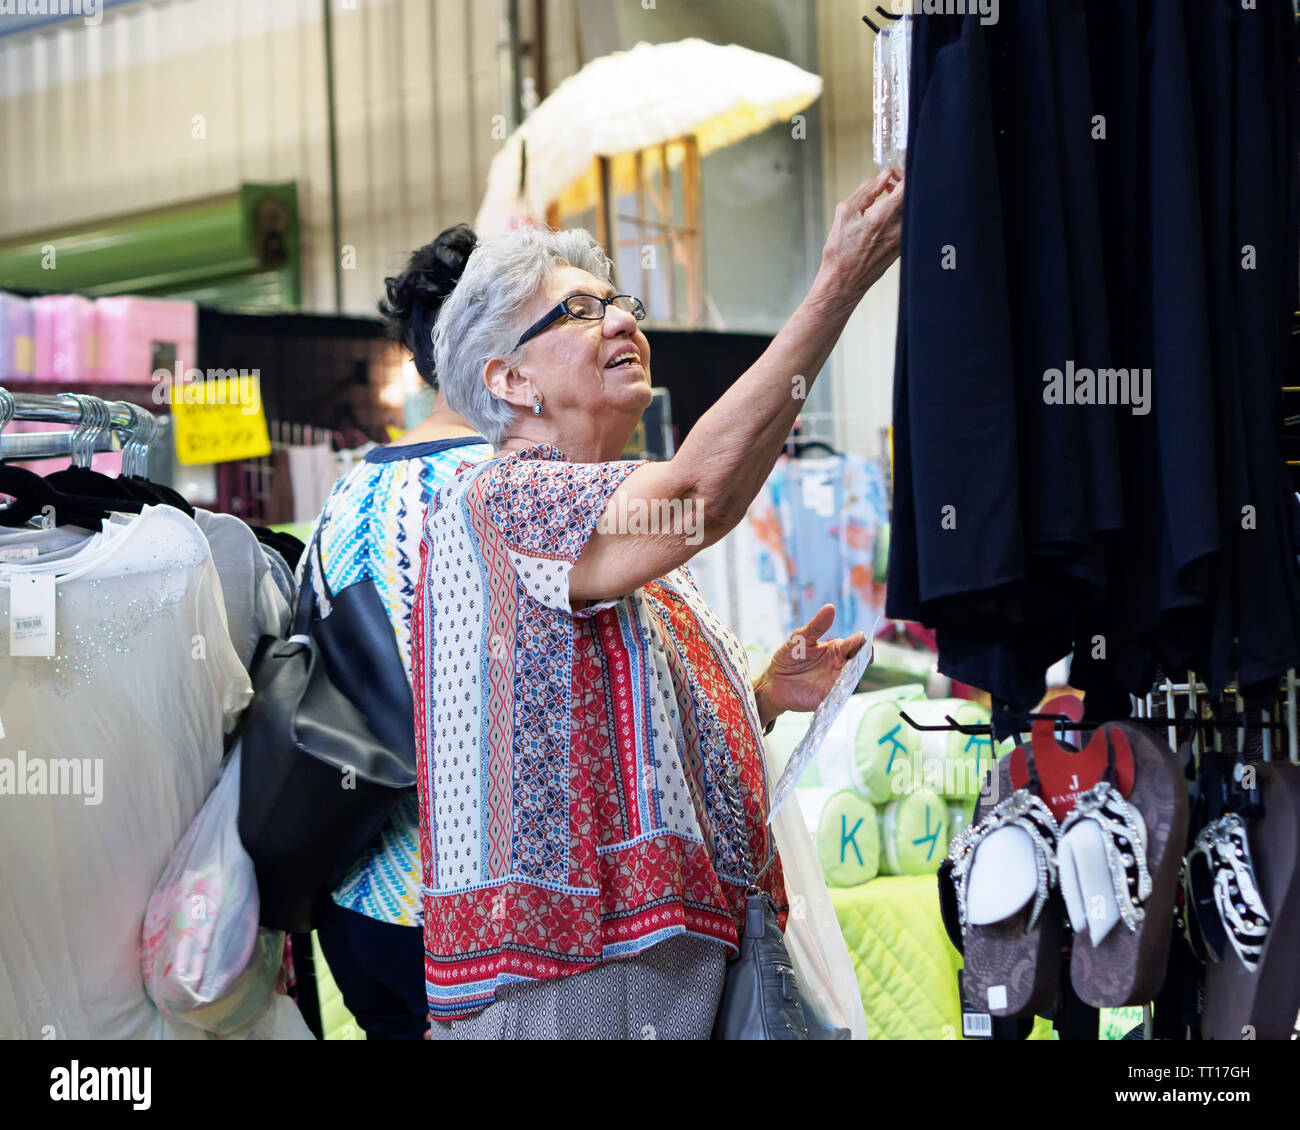 Una vecchia donna con i capelli grigi e bicchieri guarda come lei raggiunge per qualcosa mentre lo shopping. Paese Peddler mostrano Robstown, Texas, Stati Uniti d'America. Foto Stock